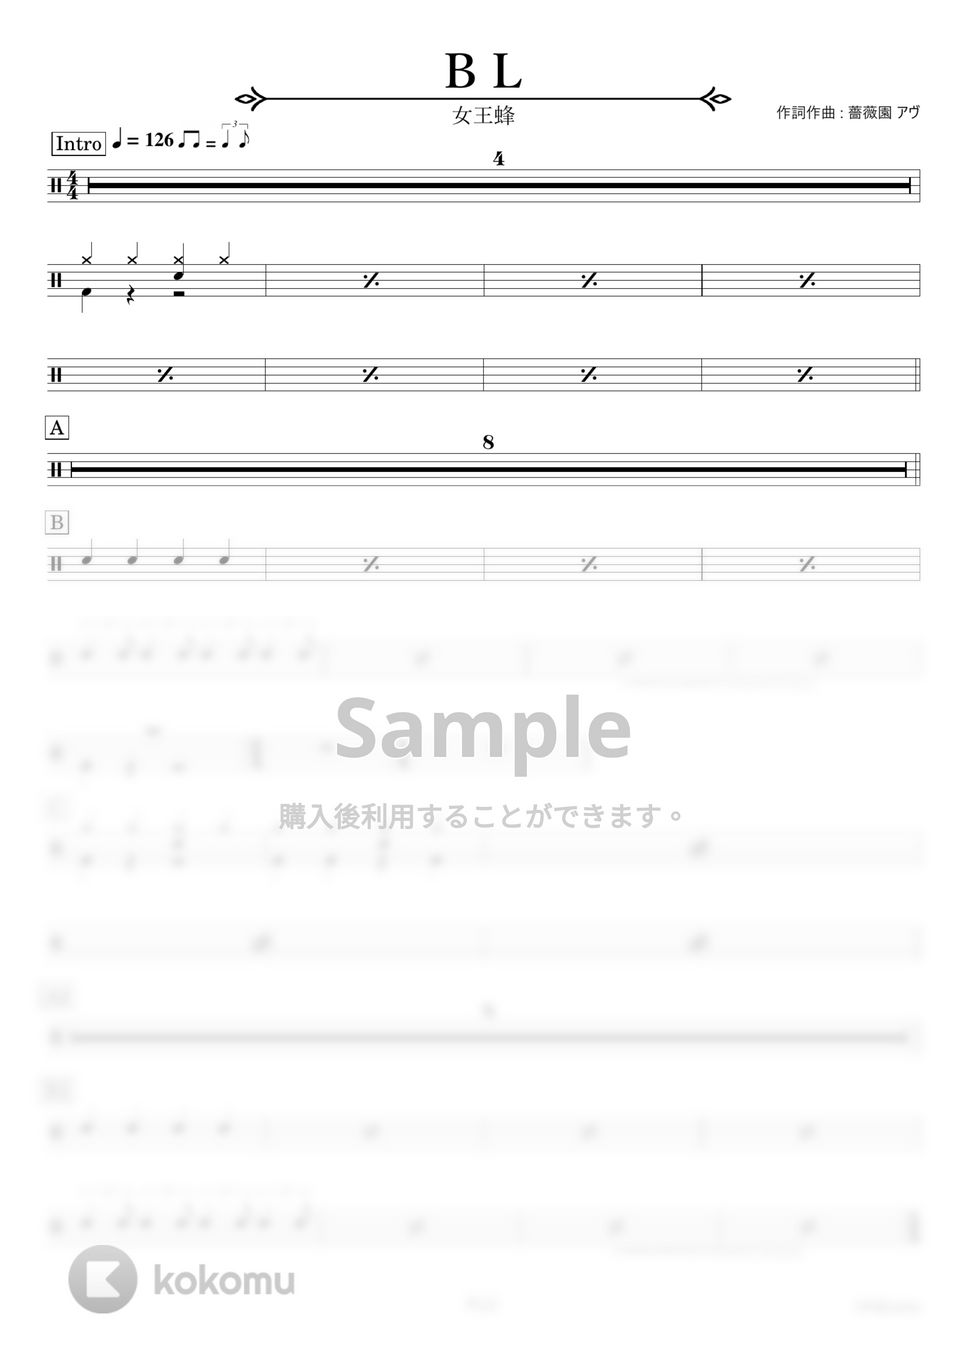 女王蜂 - ＢＬ 【ドラム楽譜〔初心者向け〕】.pdf by HYdrums